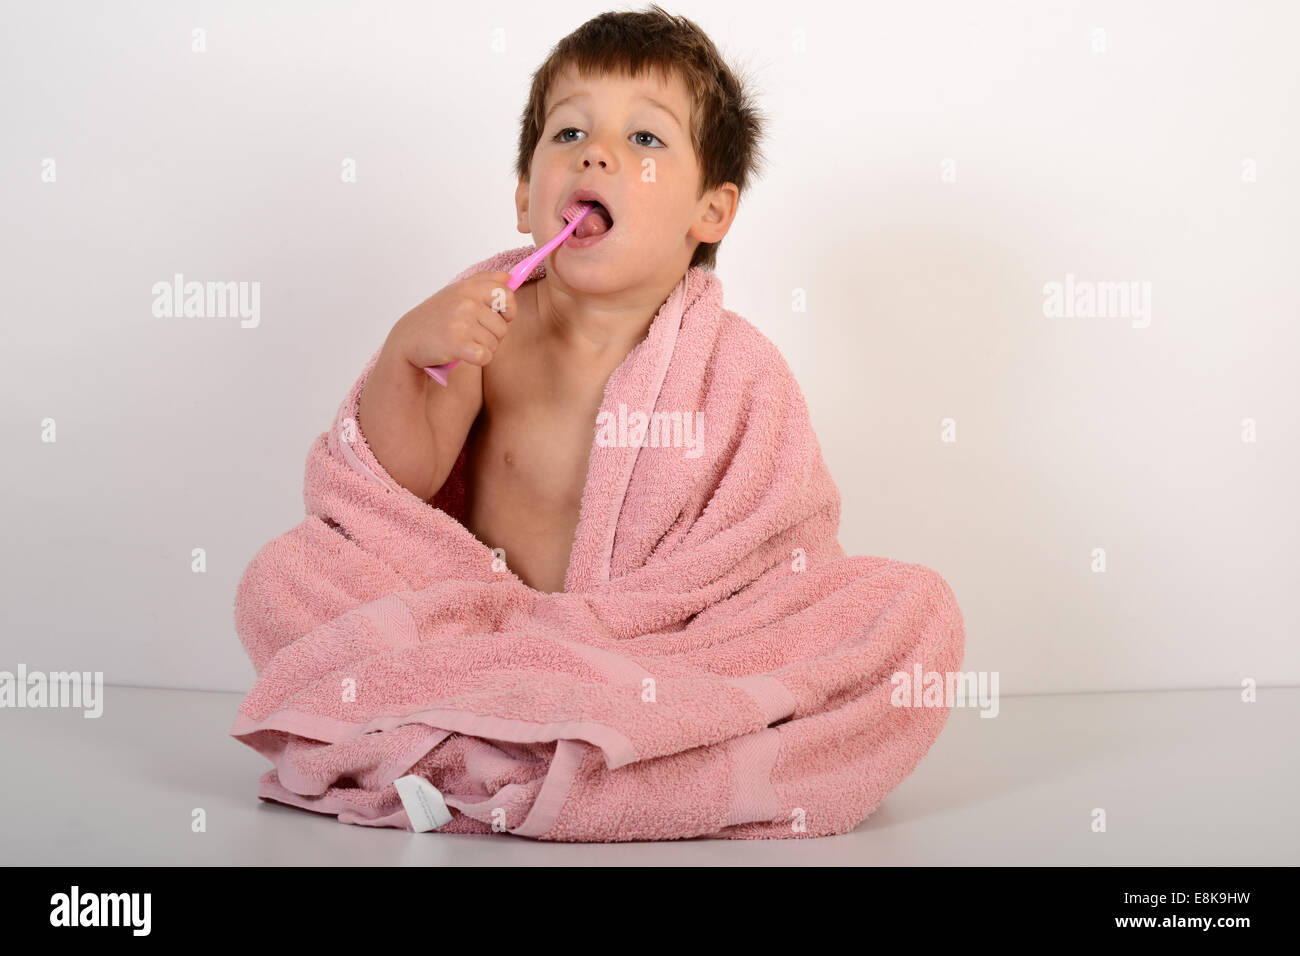 Jeune garçon enfant Les enfants de se brosser les dents de nettoyage Banque D'Images